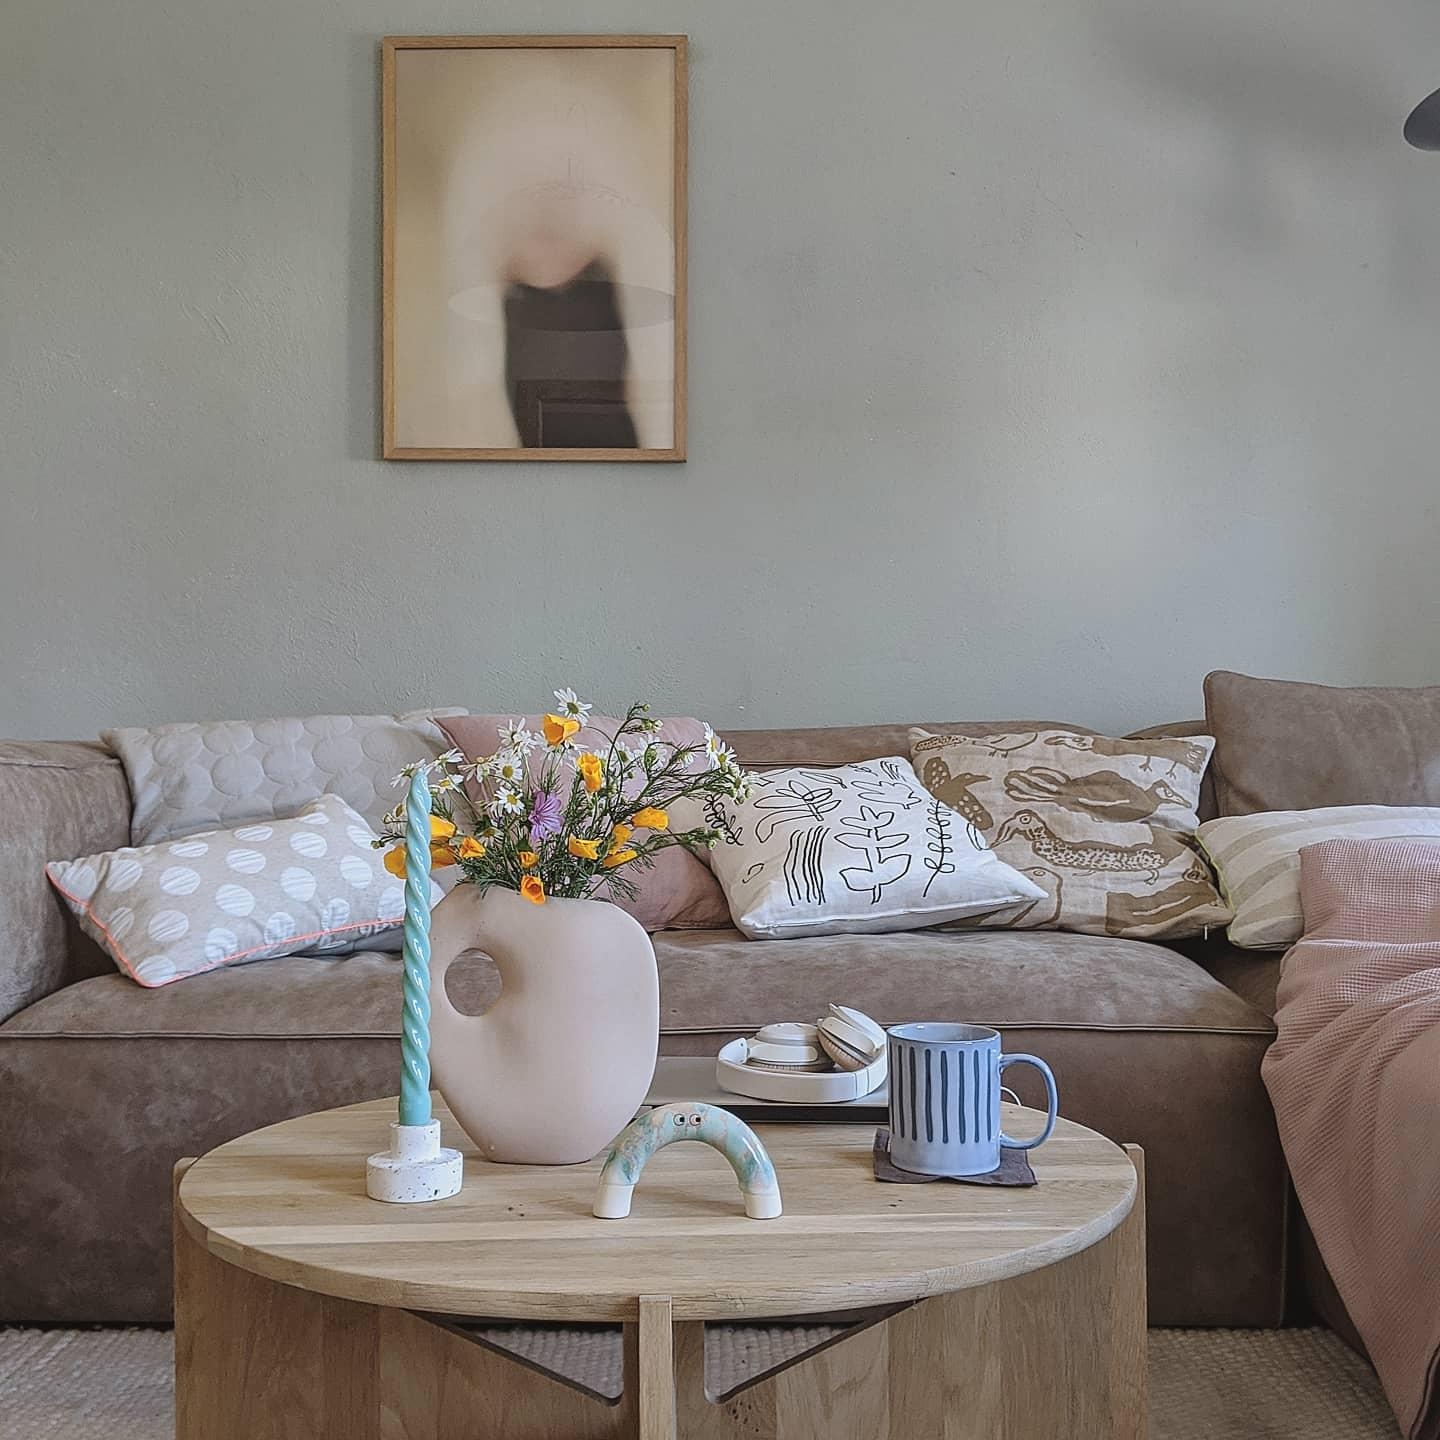 #living#livingroom#wohnzimmer #hygge#decoration#tischdeko #scandinavisch#homestory #couchstyle#blumenlieb#interior